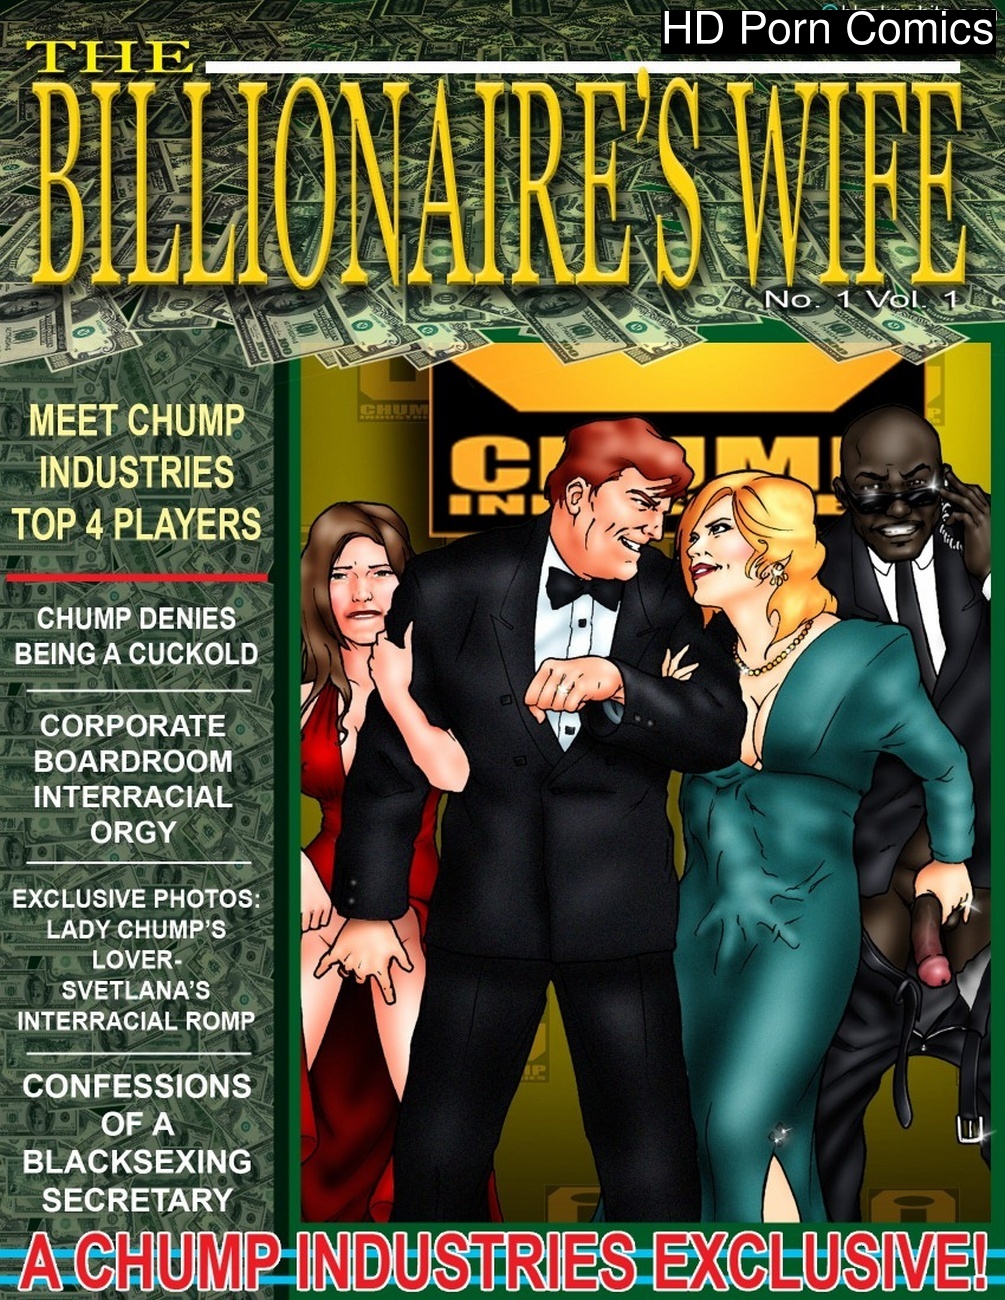 The Billionares Wife 1 Sex Comic HD Porn Comics